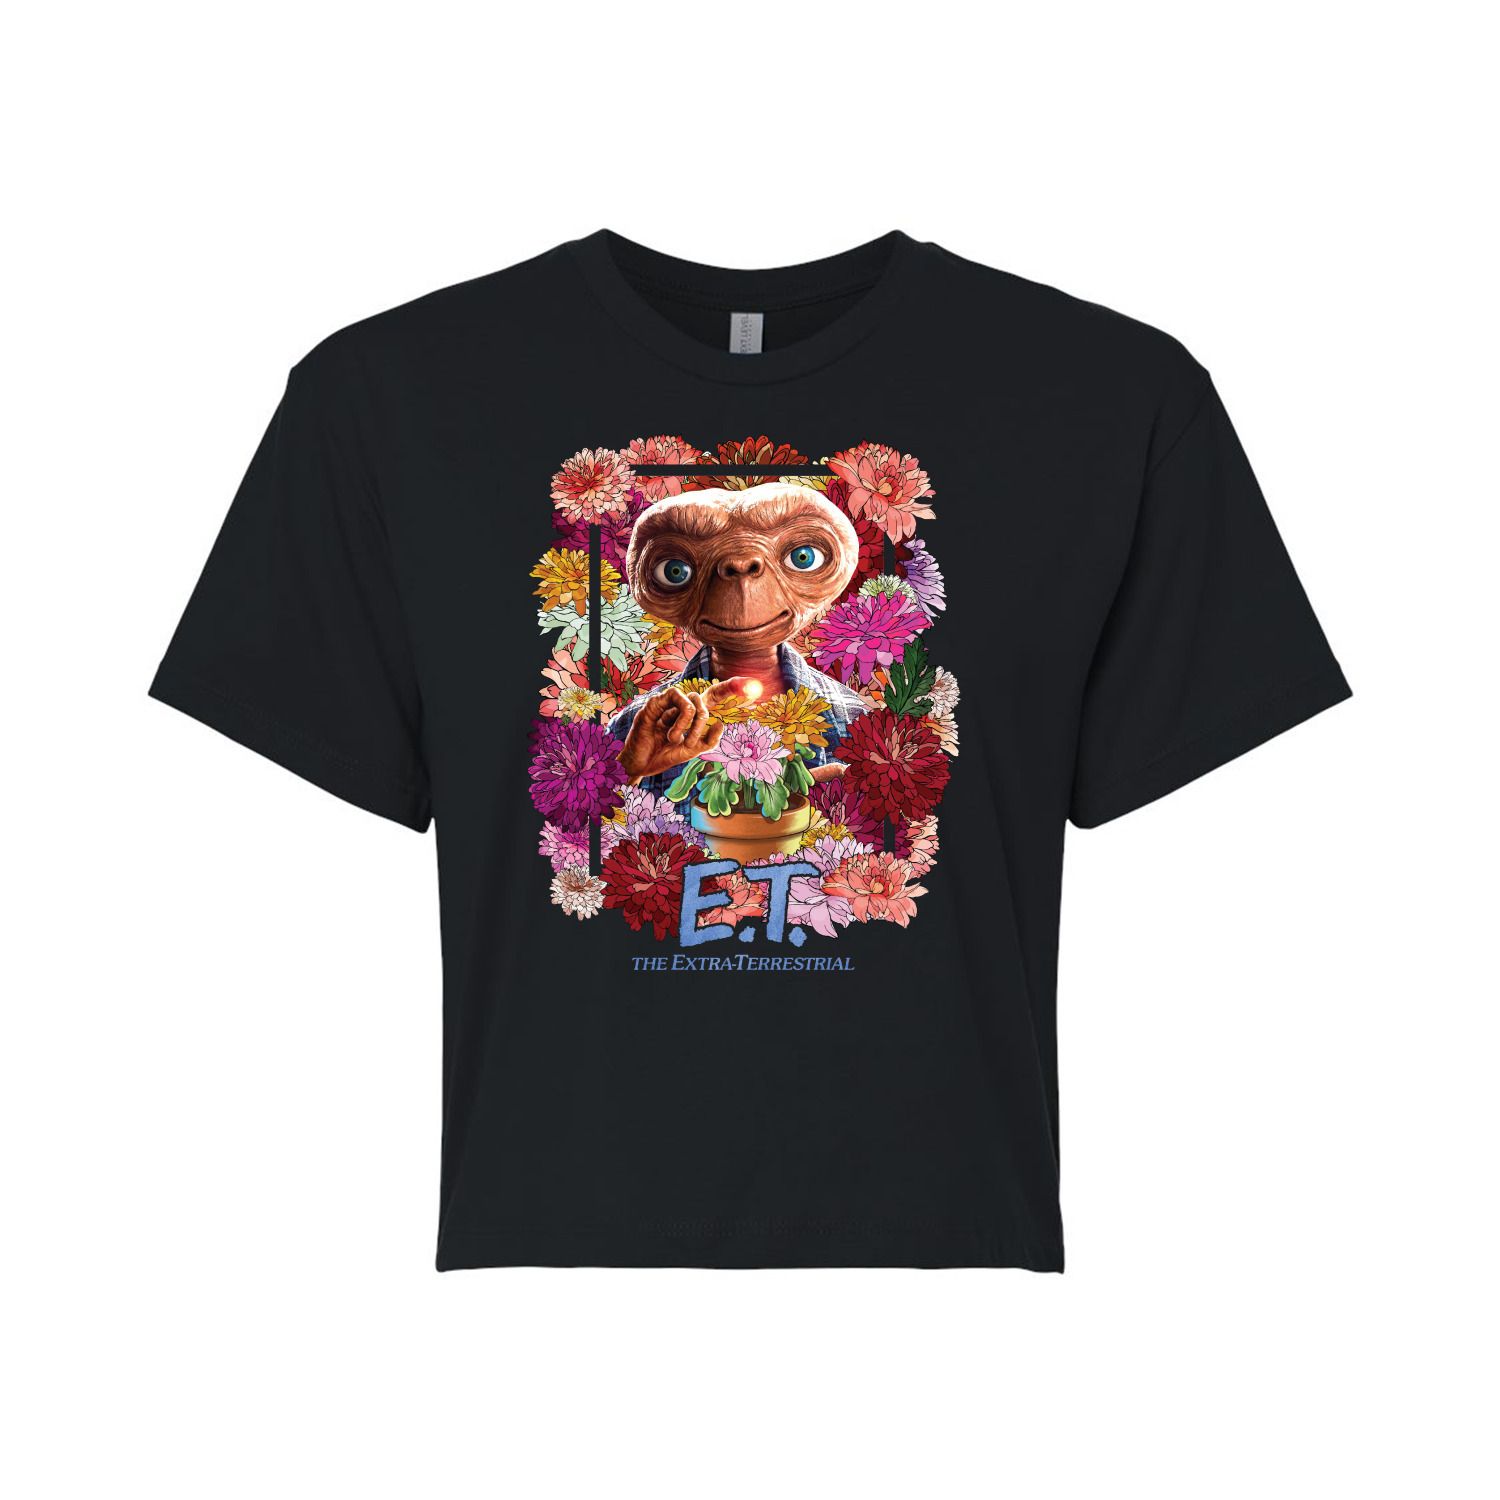 Юниоры E.T. Укороченная футболка с рисунком «Цветы» Licensed Character юниоры e t укороченная футболка с рисунком shine together licensed character белый